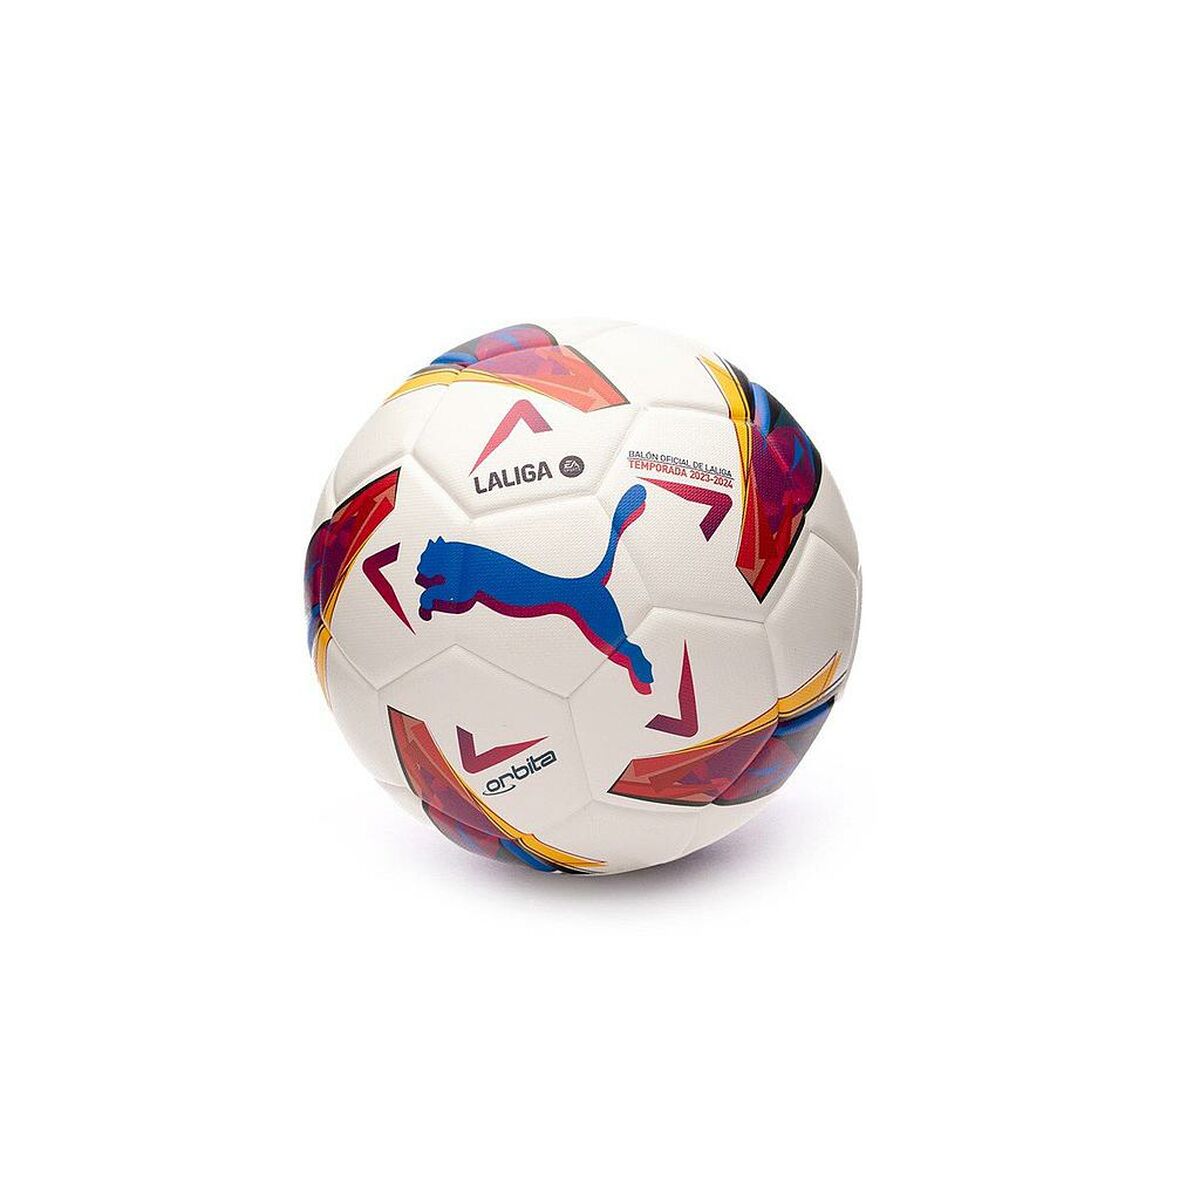 Ballon de Football Puma LALIGA